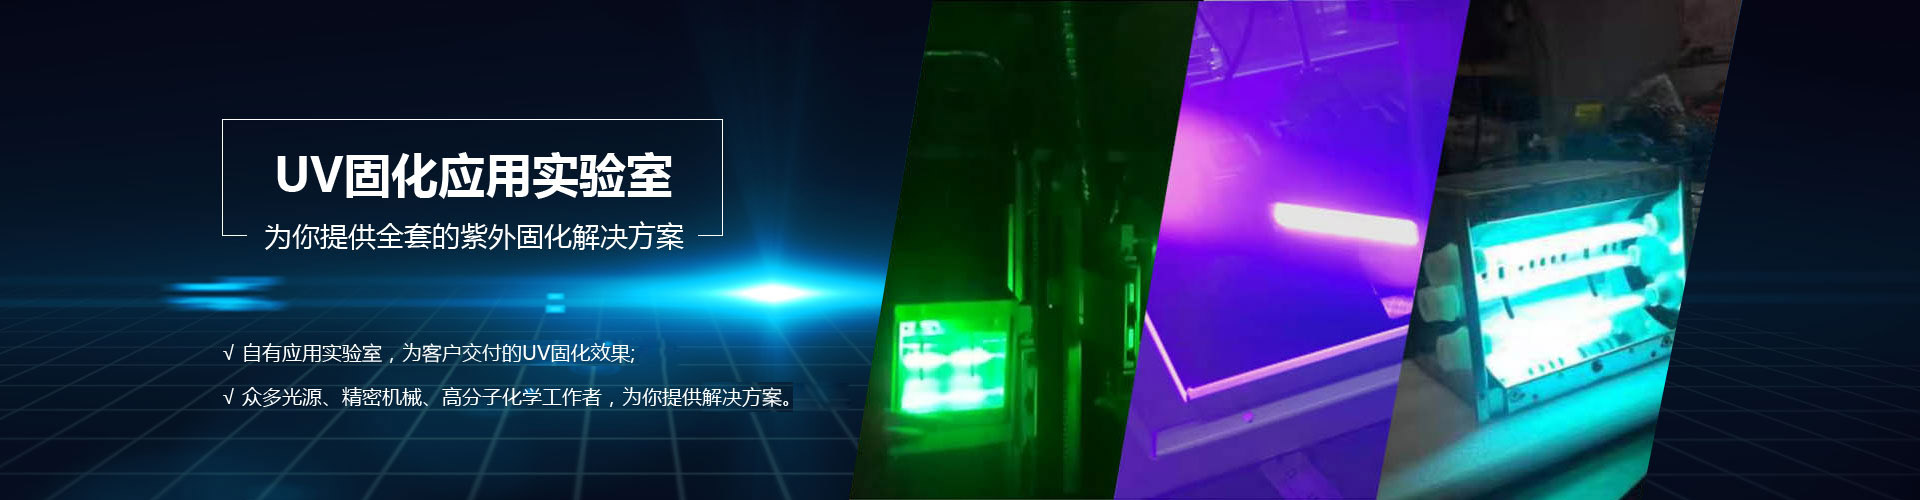 泰安紫波光电科技有限公司 